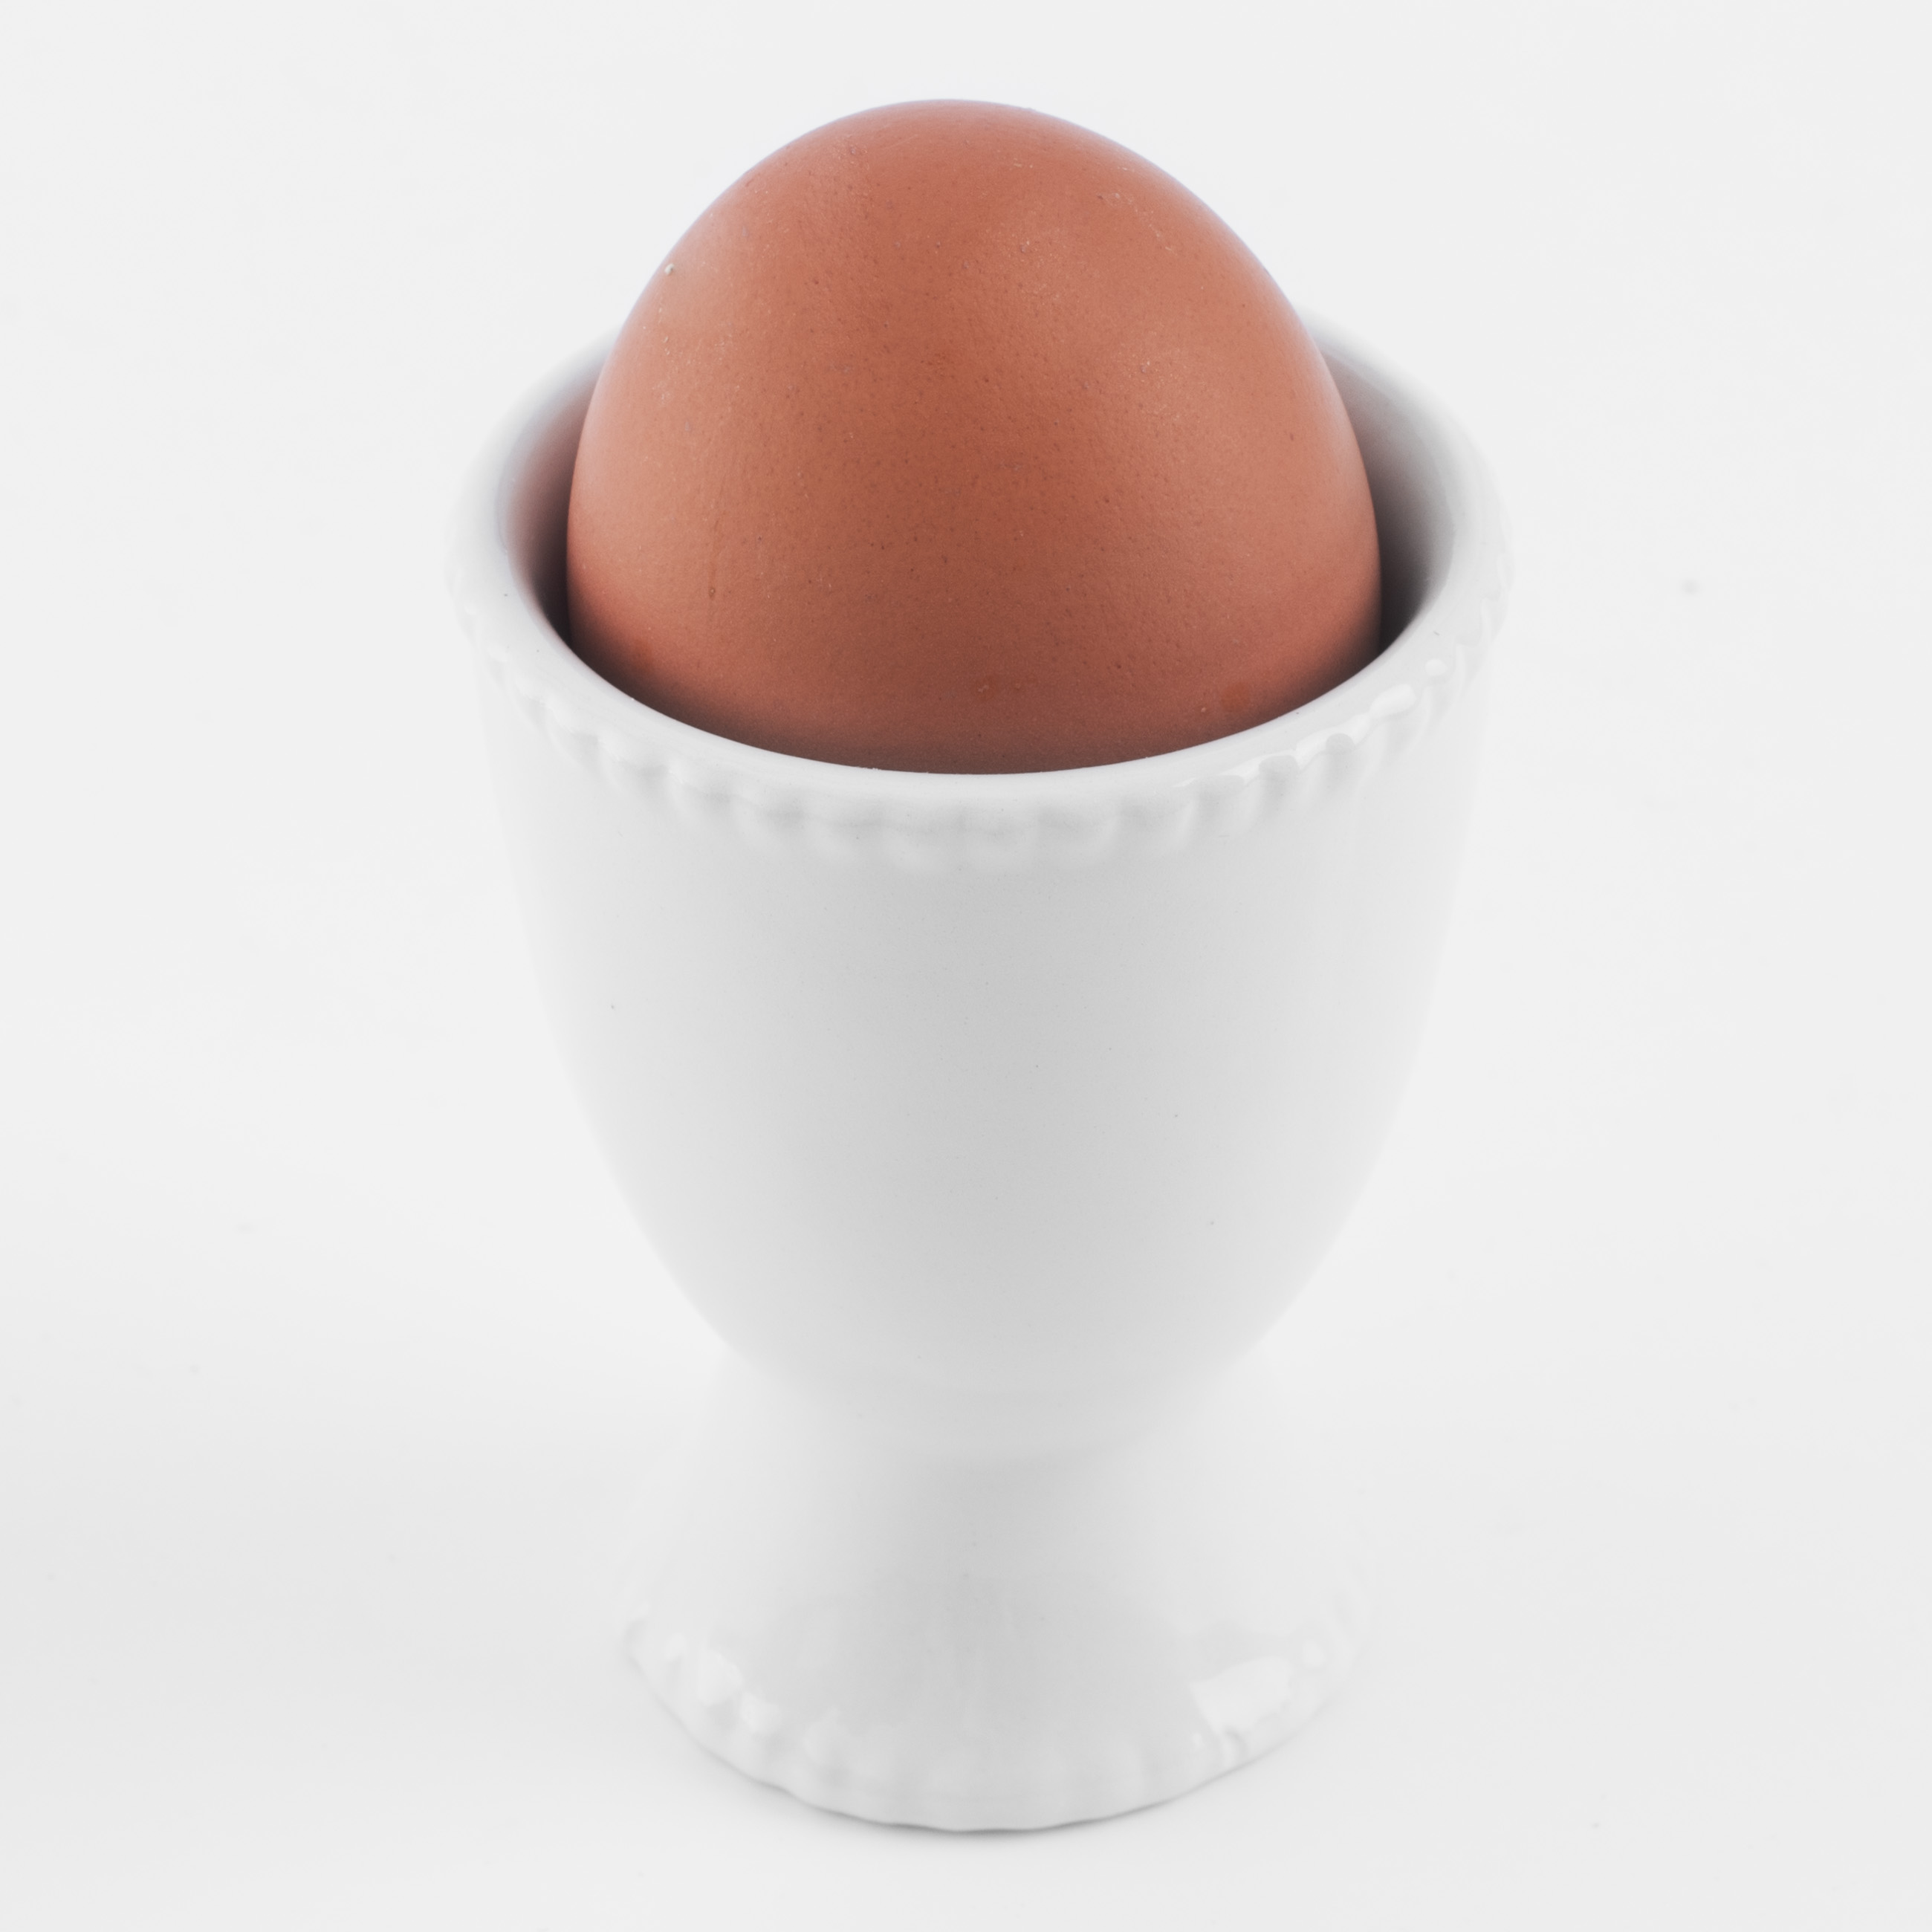 Подставка для яйца, 8 см, керамика, белая, Easter blooming изображение № 5